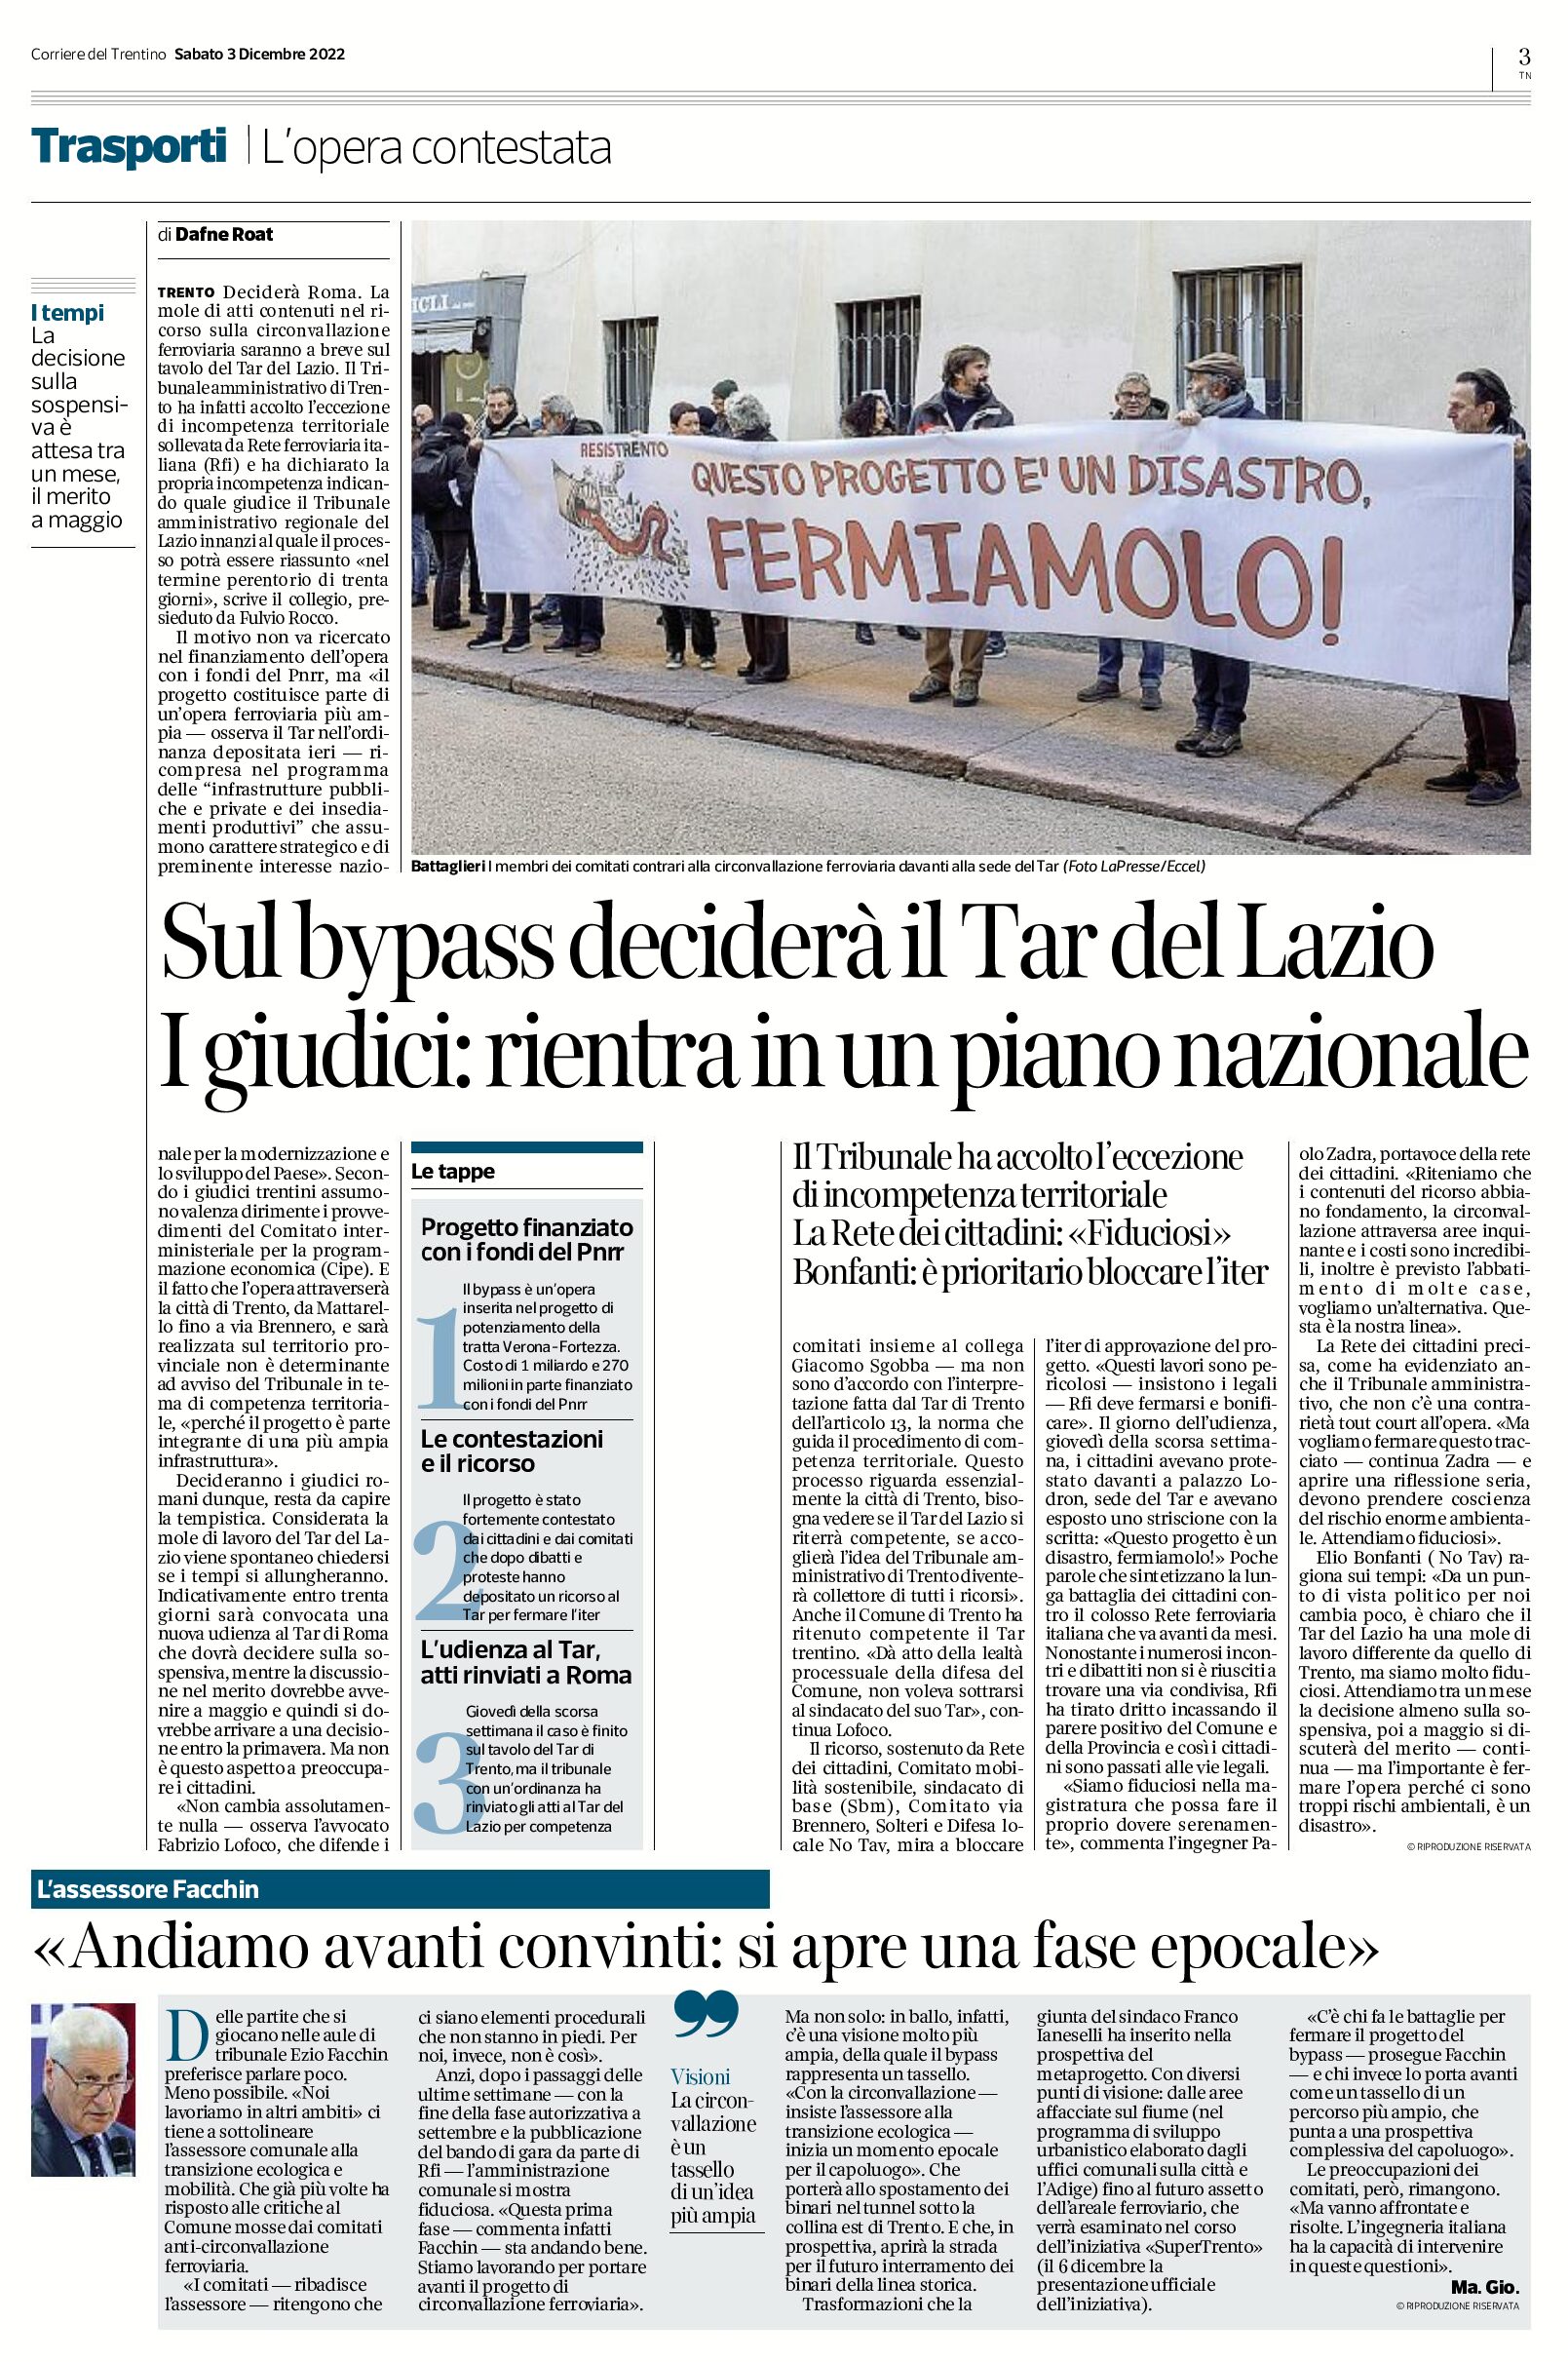 Trento: sul bypass deciderà il Tar del Lazio